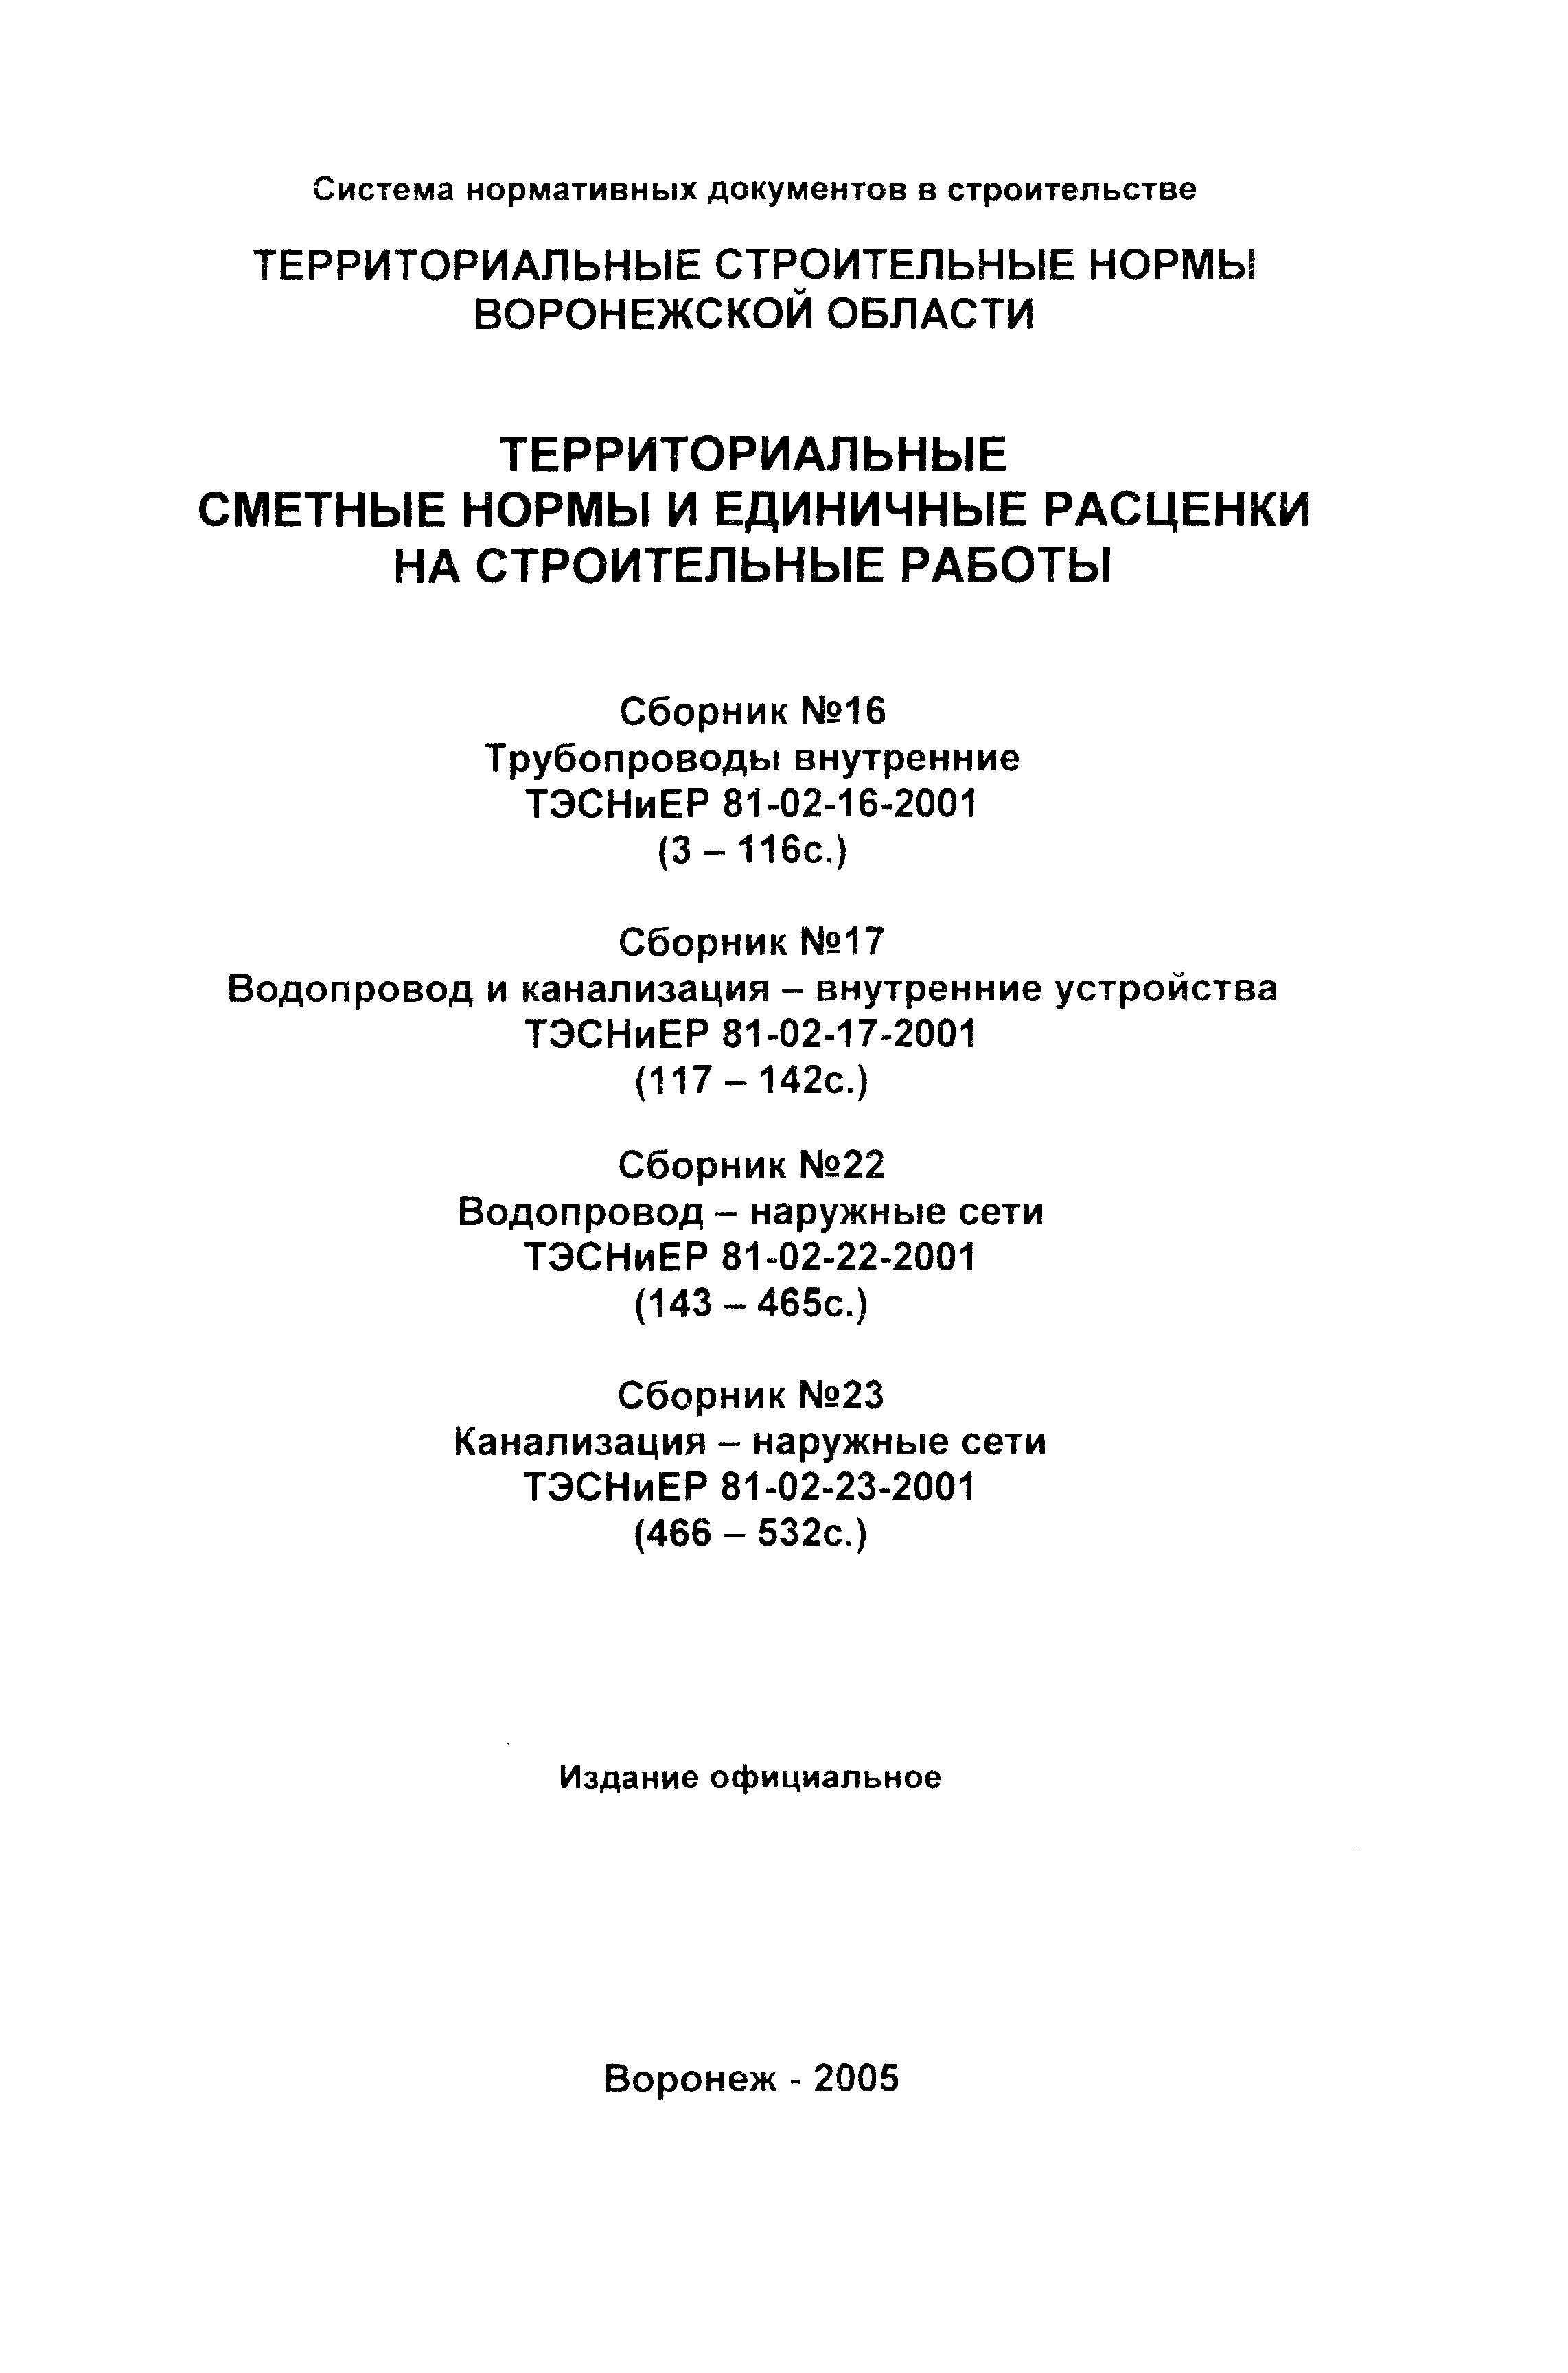 ТЭСНиЕР Воронежской области 81-02-16-2001